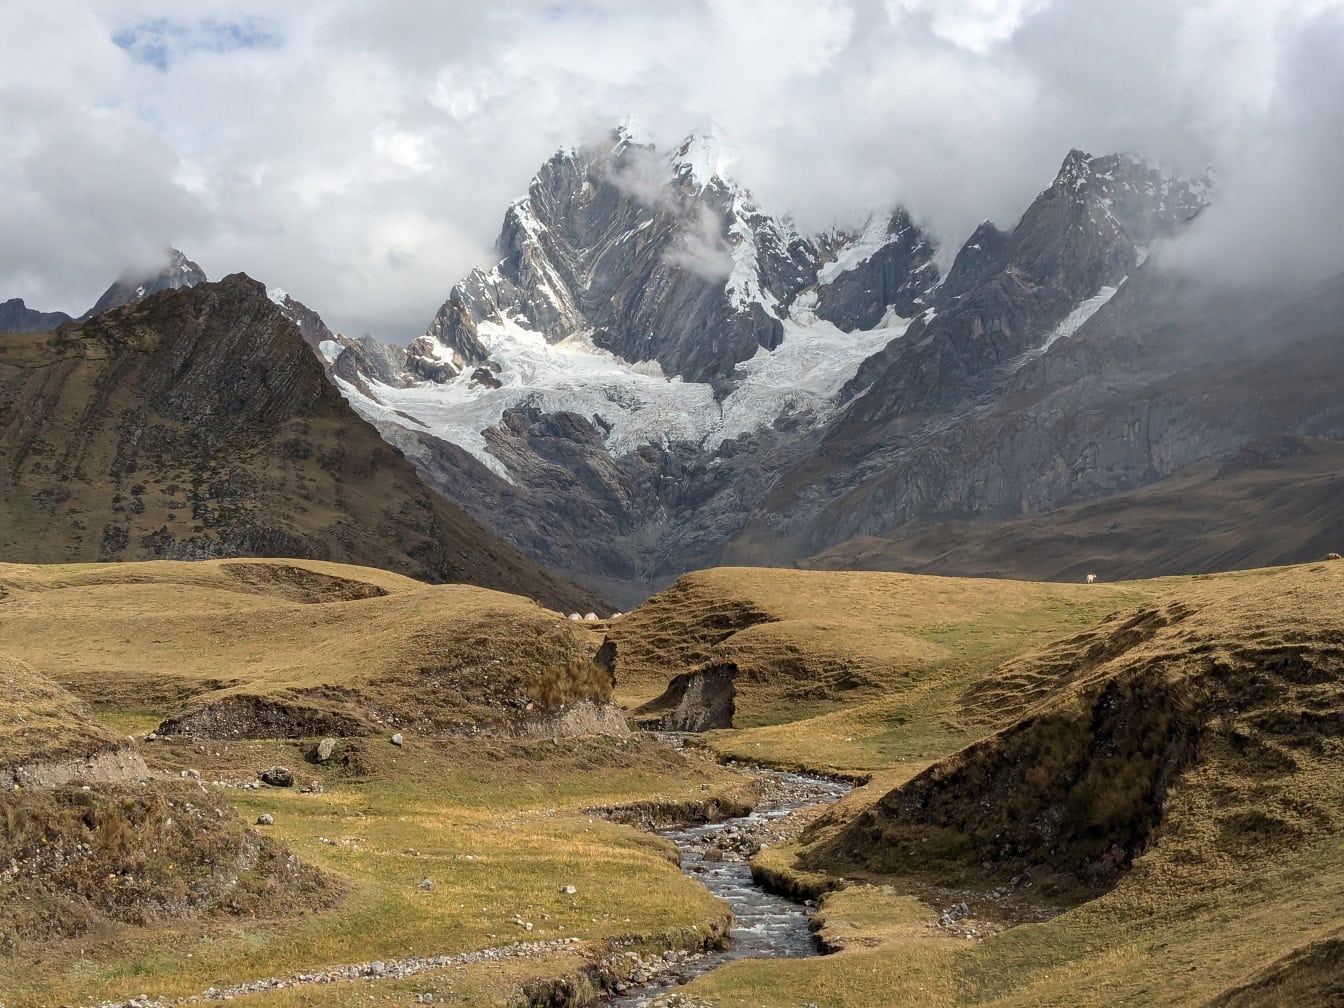 Râu de munte care trece printr-o vale din lanțul muntos Cordillera Huayhuash din Anzi din Peru, cu munți în fundal